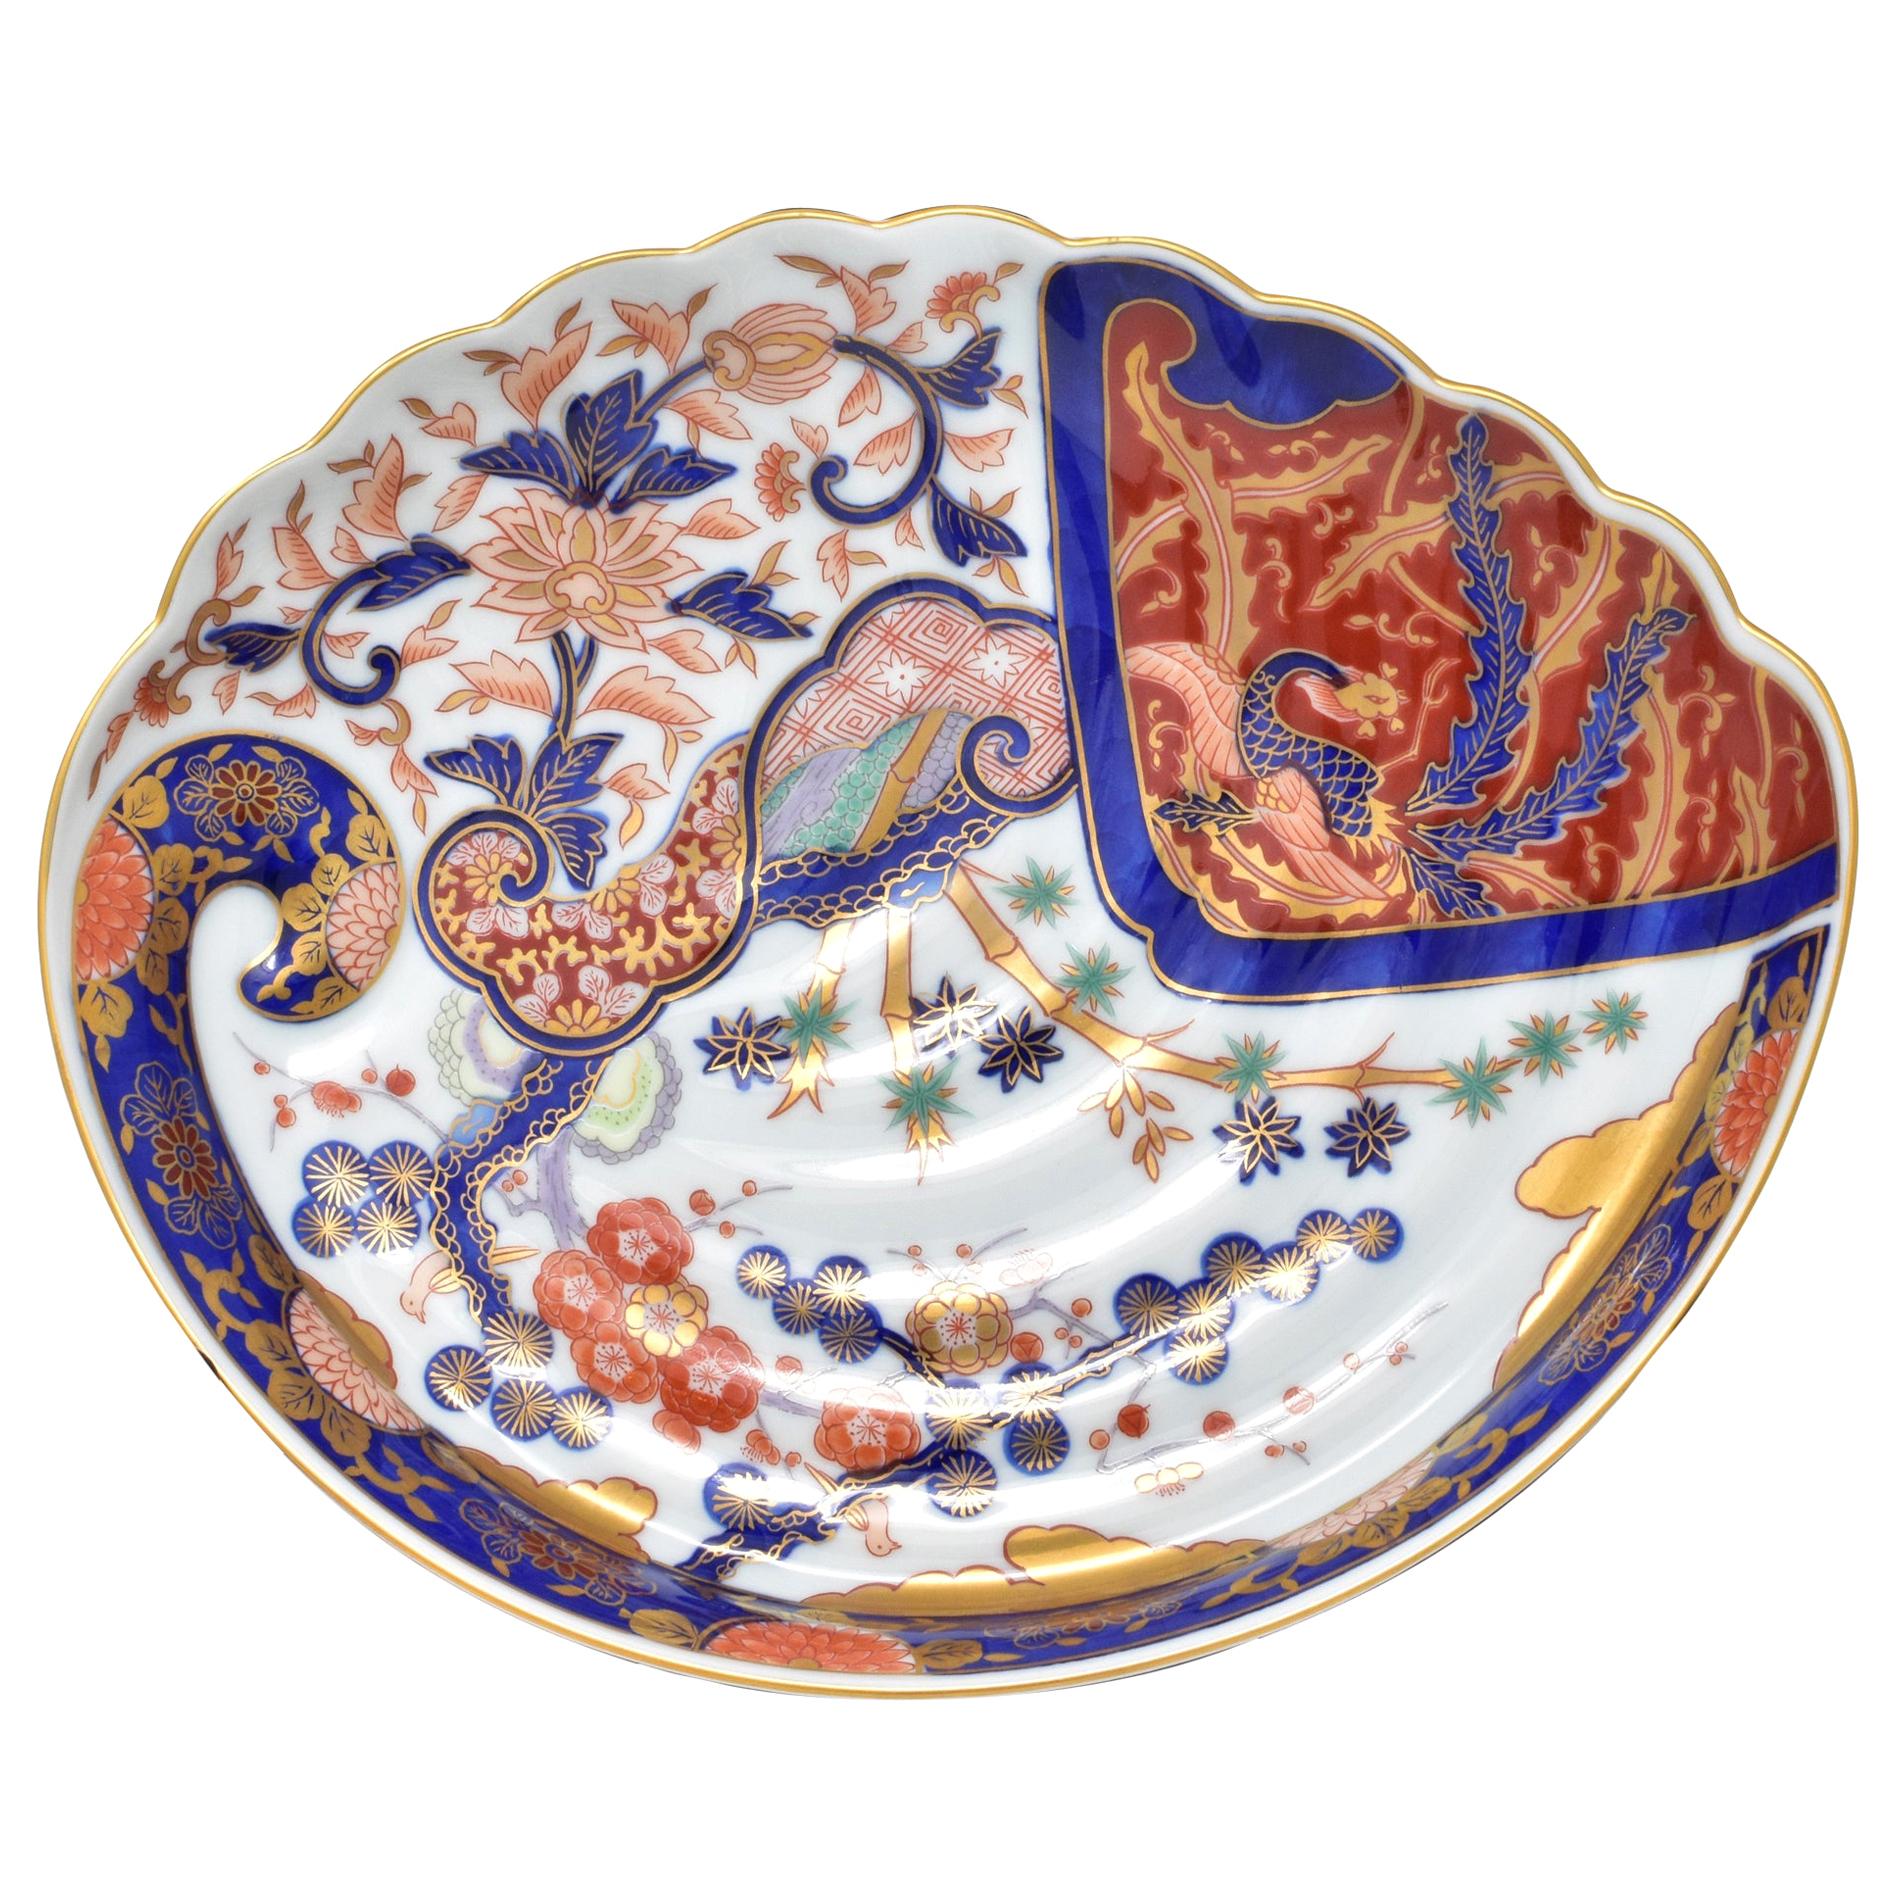 Assiette de présentation japonaise contemporaine en porcelaine bleue et or blanche